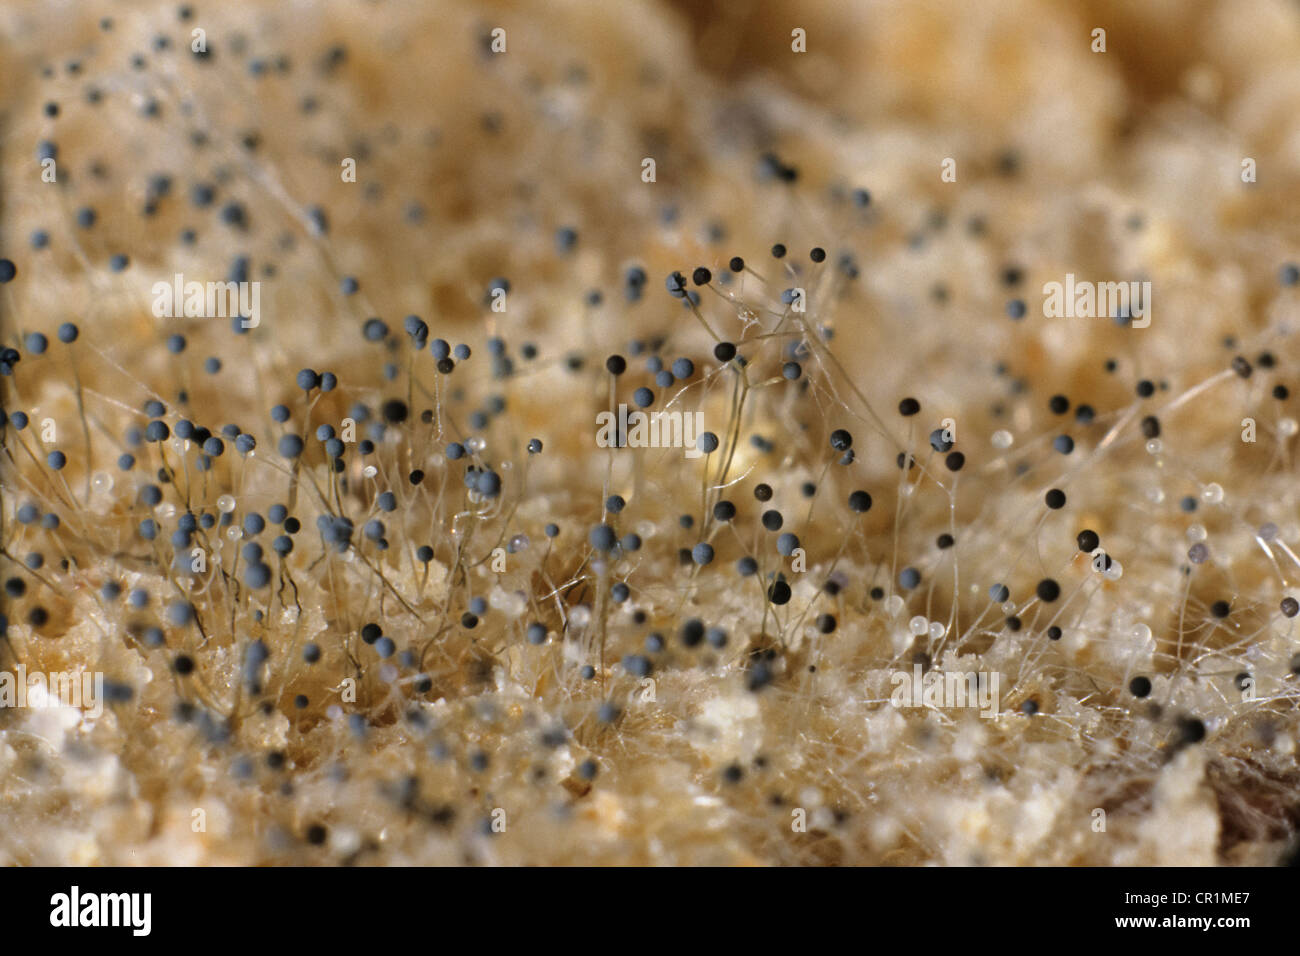 Pan de molde blanco bajo un microscopio, moho, hongos (Mucor sp.),  Alemania, Europa Fotografía de stock - Alamy